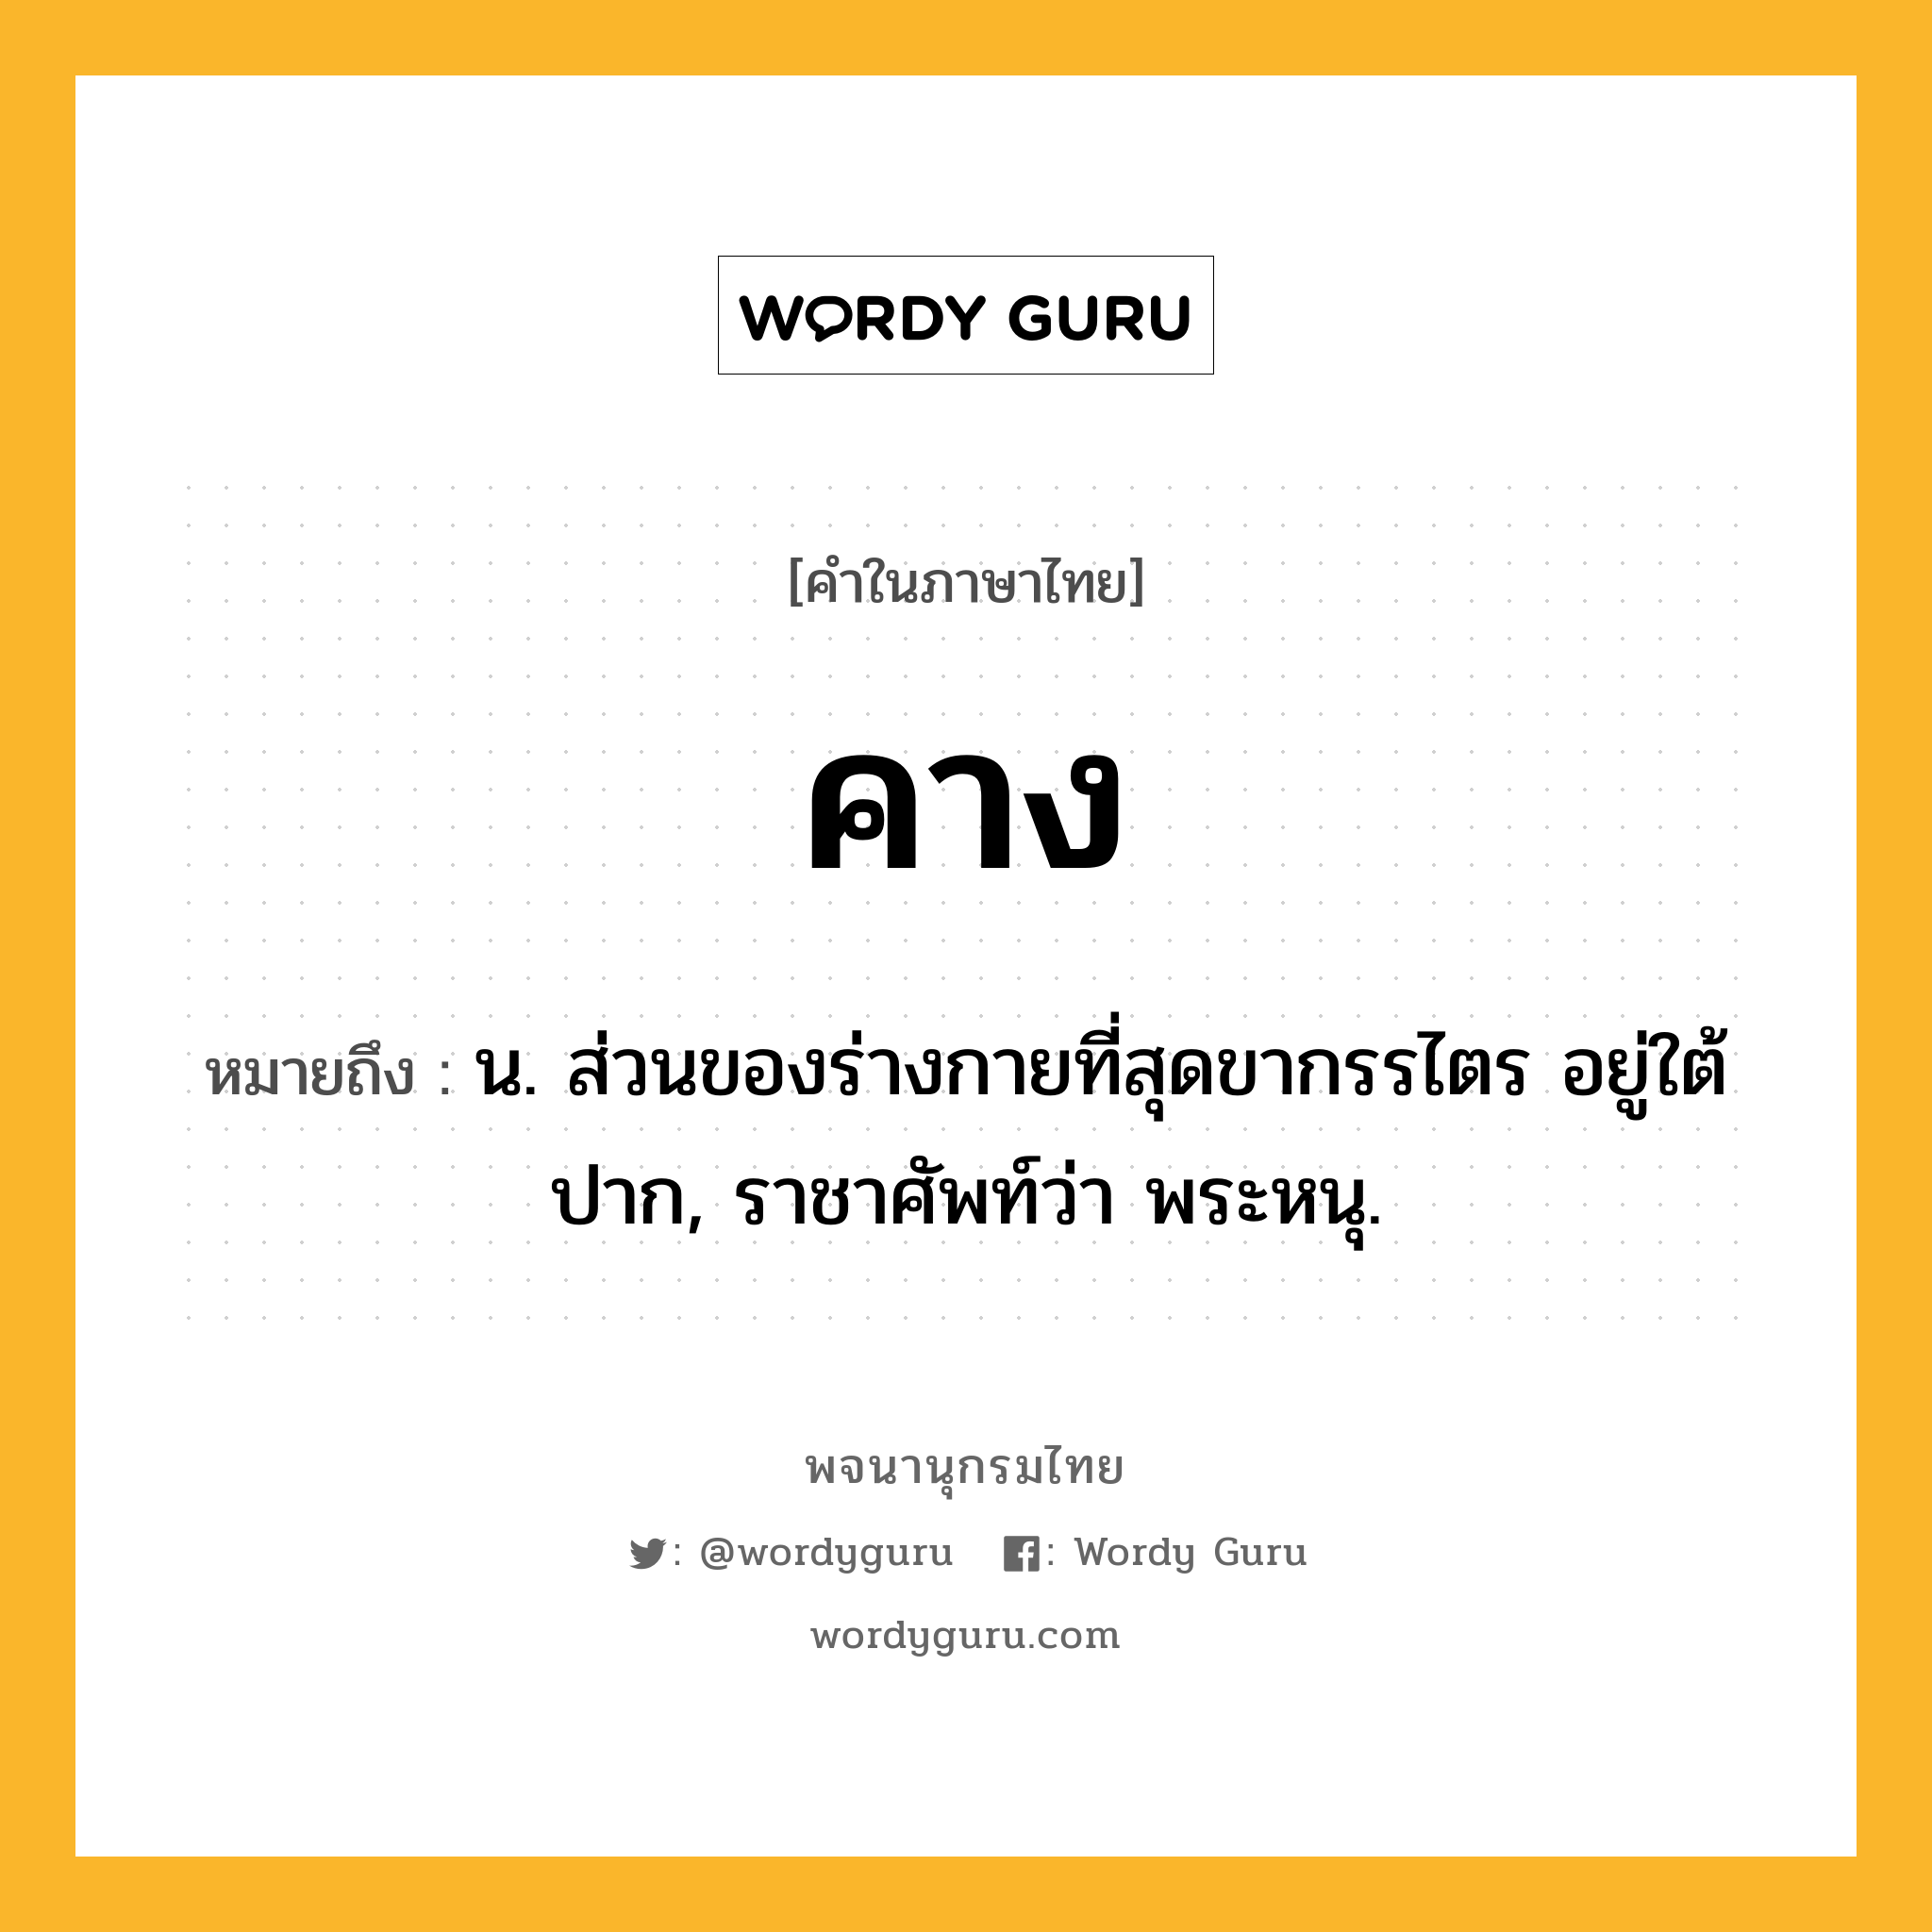 คาง หมายถึงอะไร?, คำในภาษาไทย คาง หมายถึง น. ส่วนของร่างกายที่สุดขากรรไตร อยู่ใต้ปาก, ราชาศัพท์ว่า พระหนุ.